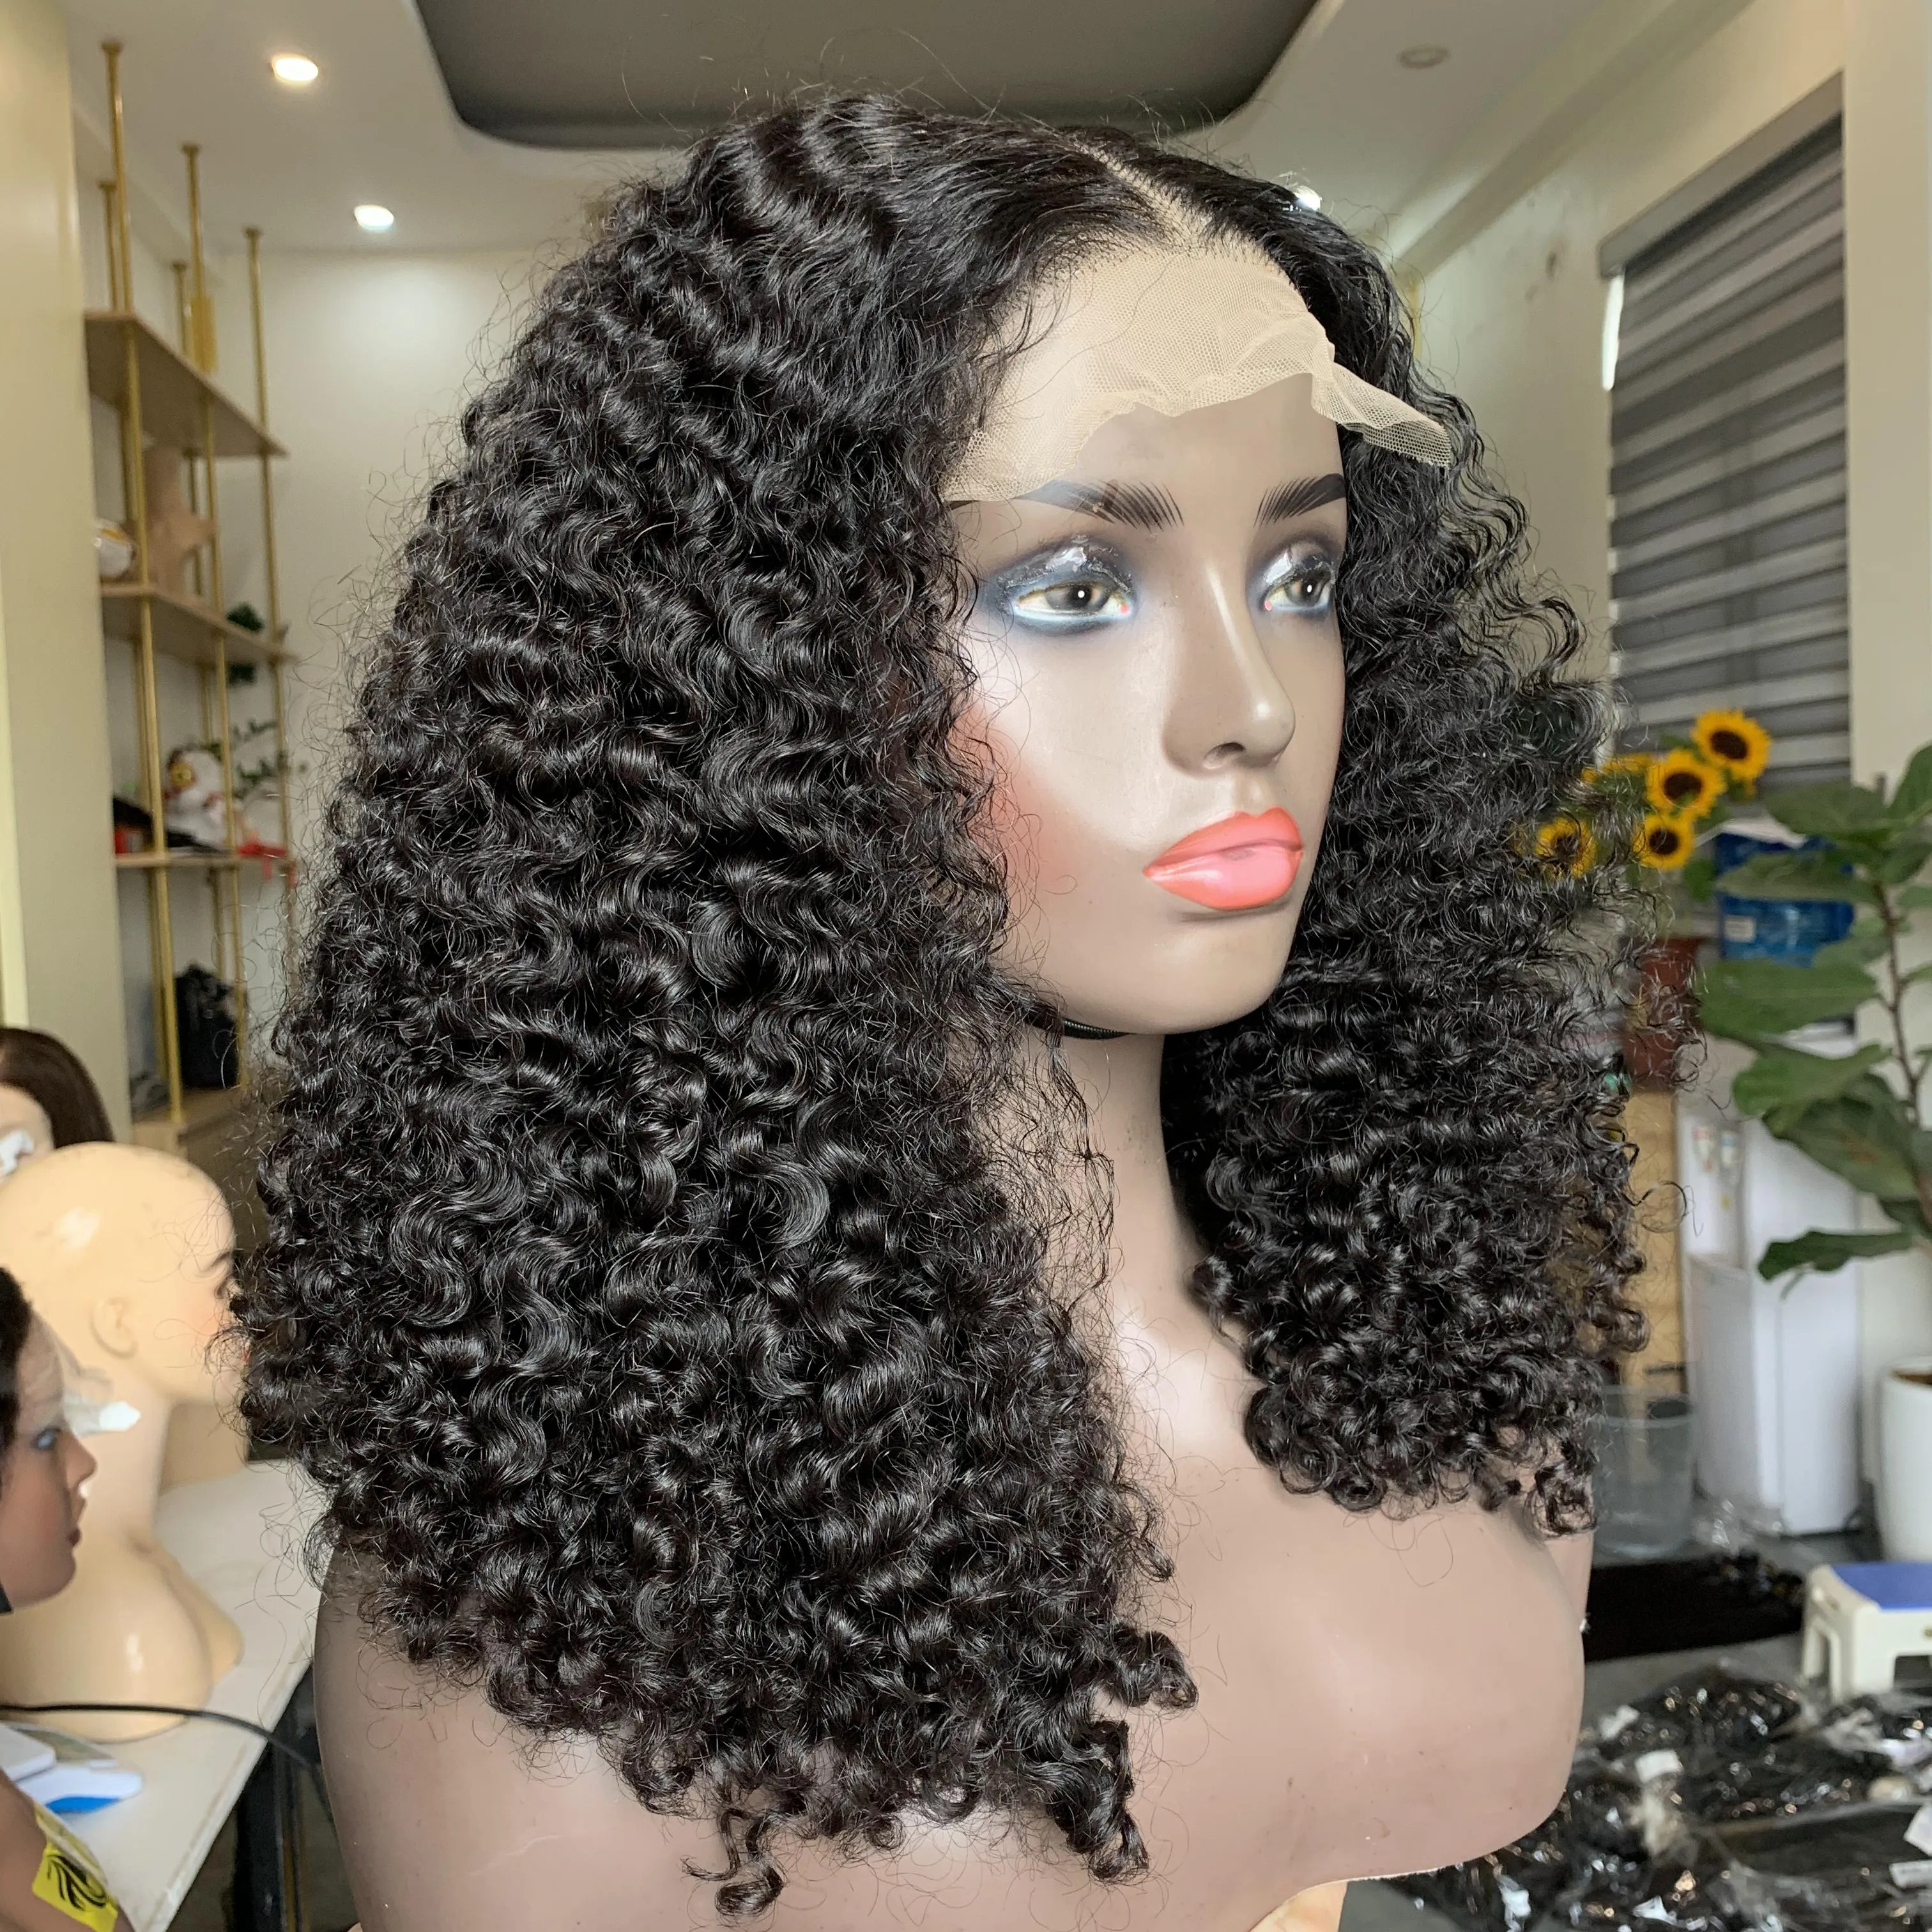 Vente chaude 2021 cheveux bouclés courts perruques de dentelle humaine cheveux bouclés profonds perruques de cheveux courts femmes perruque frontale pour les femmes noires